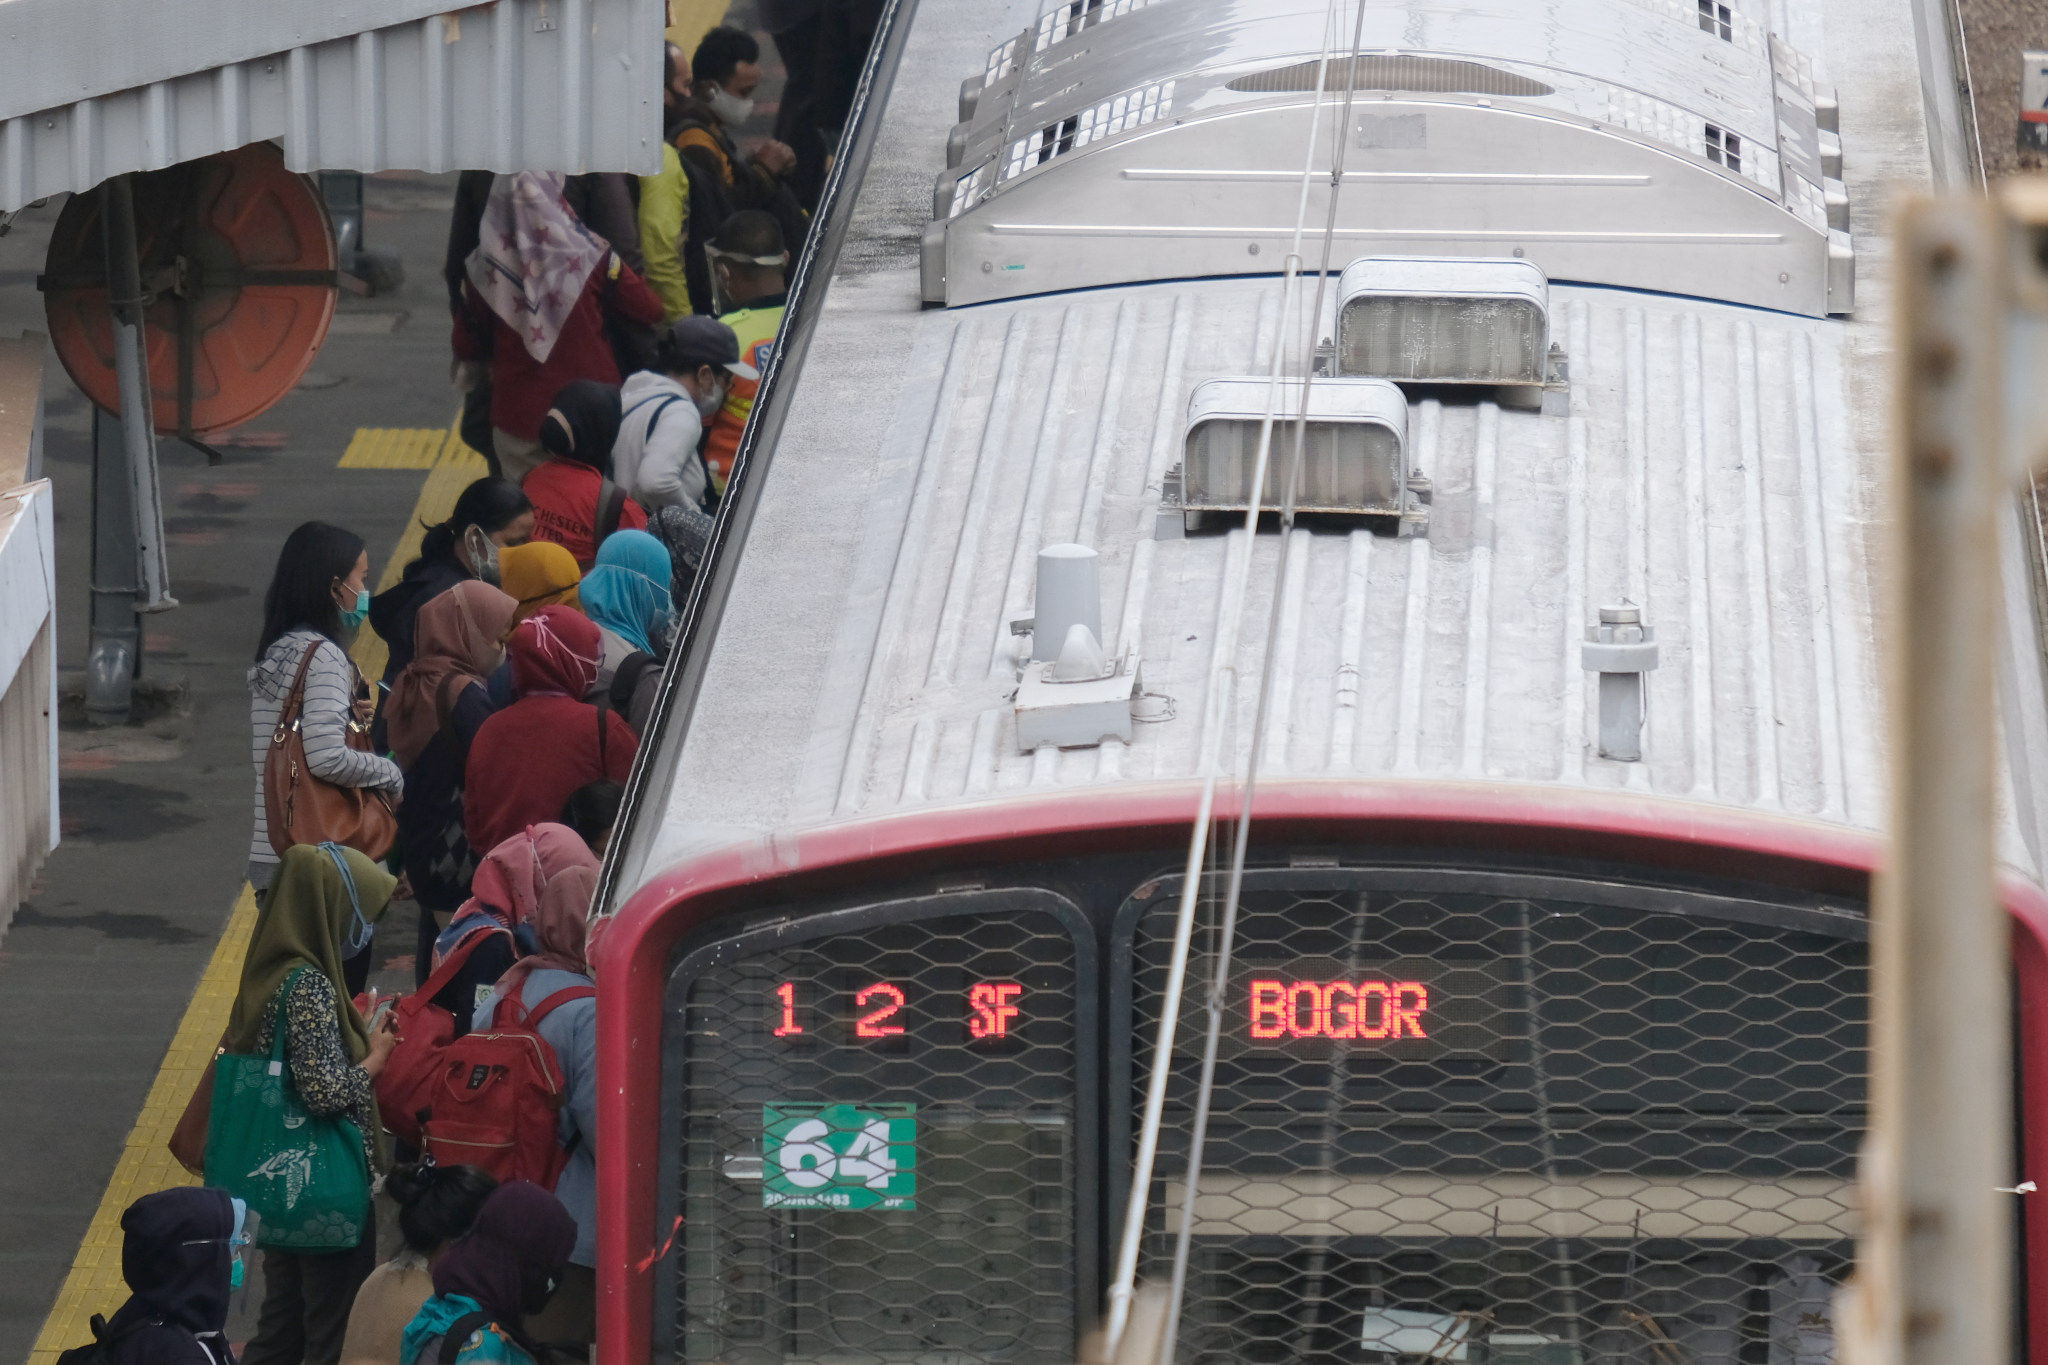 <p>Sejumlah penumpang bersiap menaiki rangkaian kereta listrik (KRL) di Stasiun Cawang, Jakarta, Senin, 14 September 2020. Pengguna transportasi KRL menurun drastis saat hari pertama pemberlakuan PSSB total. Pengguna KRL tercatat ada 92.546 pengguna atau berkurang hingga 19% dibandingkan Senin 7 September 2020 pekan lalu yang mencapai 114.075 pengguna pada waktu yang sama. Foto: Ismail Pohan/TrenAsia</p>
